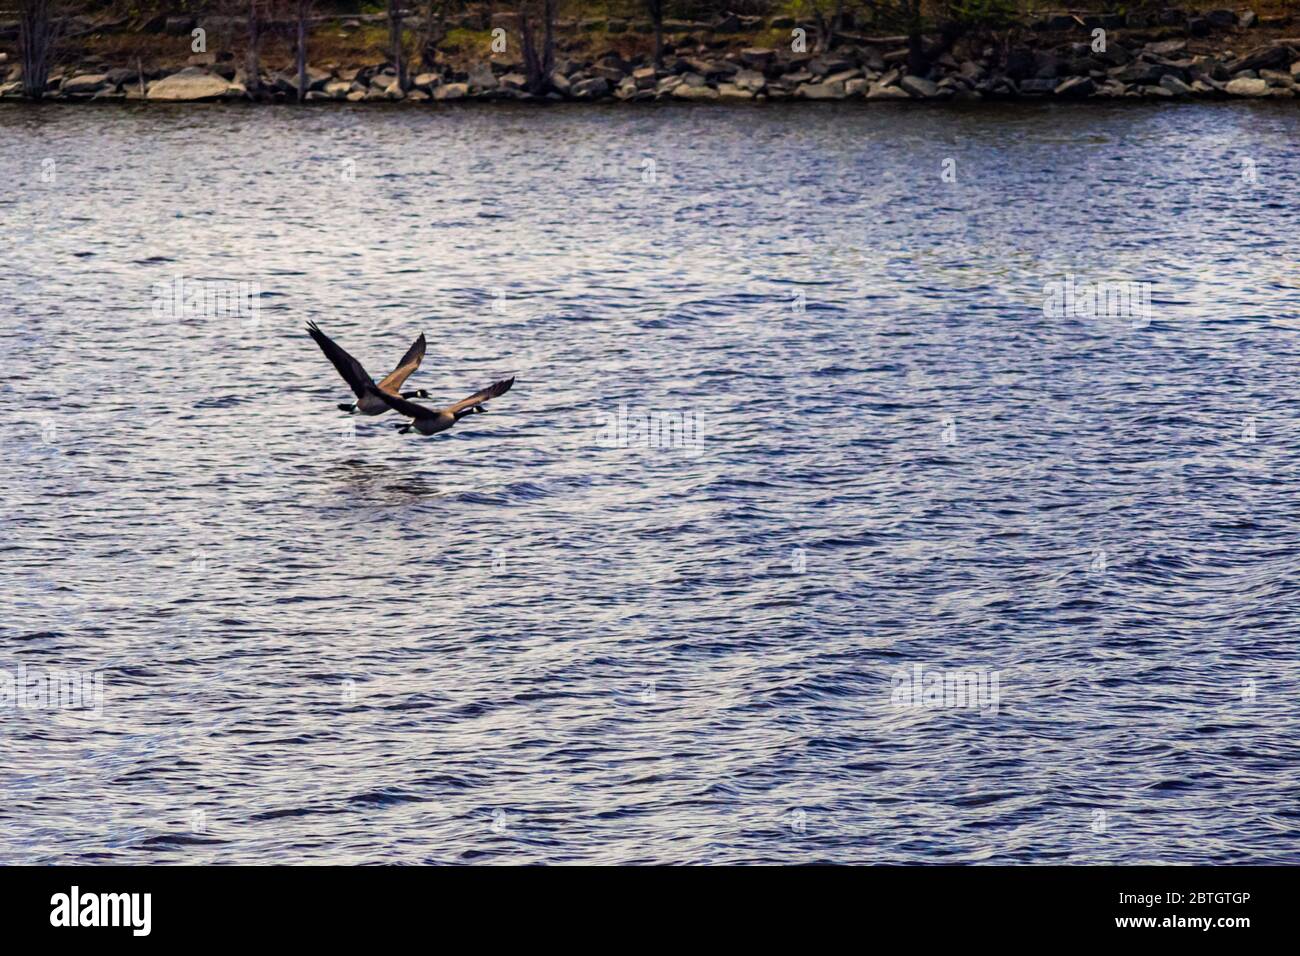 Un paio di oche canadesi stanno volando in basso sull'acqua del fiume poco dopo il decollo in volo. Foto Stock